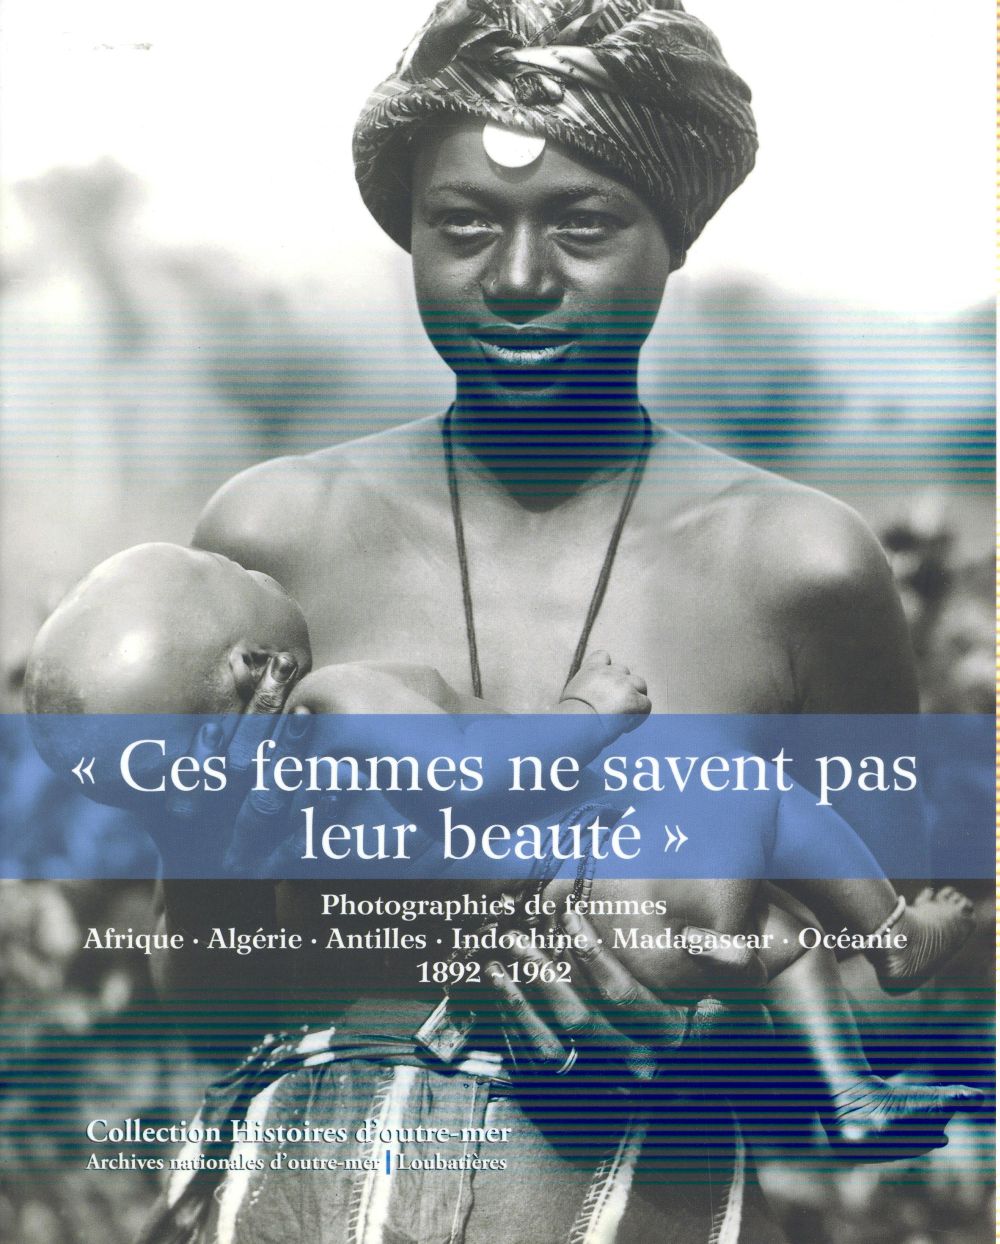 CES FEMMES NE SAVENT PAS LEUR BEAUTE  - PHOTOGRAPHIES DE FEMMES. AFRIQUE, ALGERIE, INDOCHINE, MAD